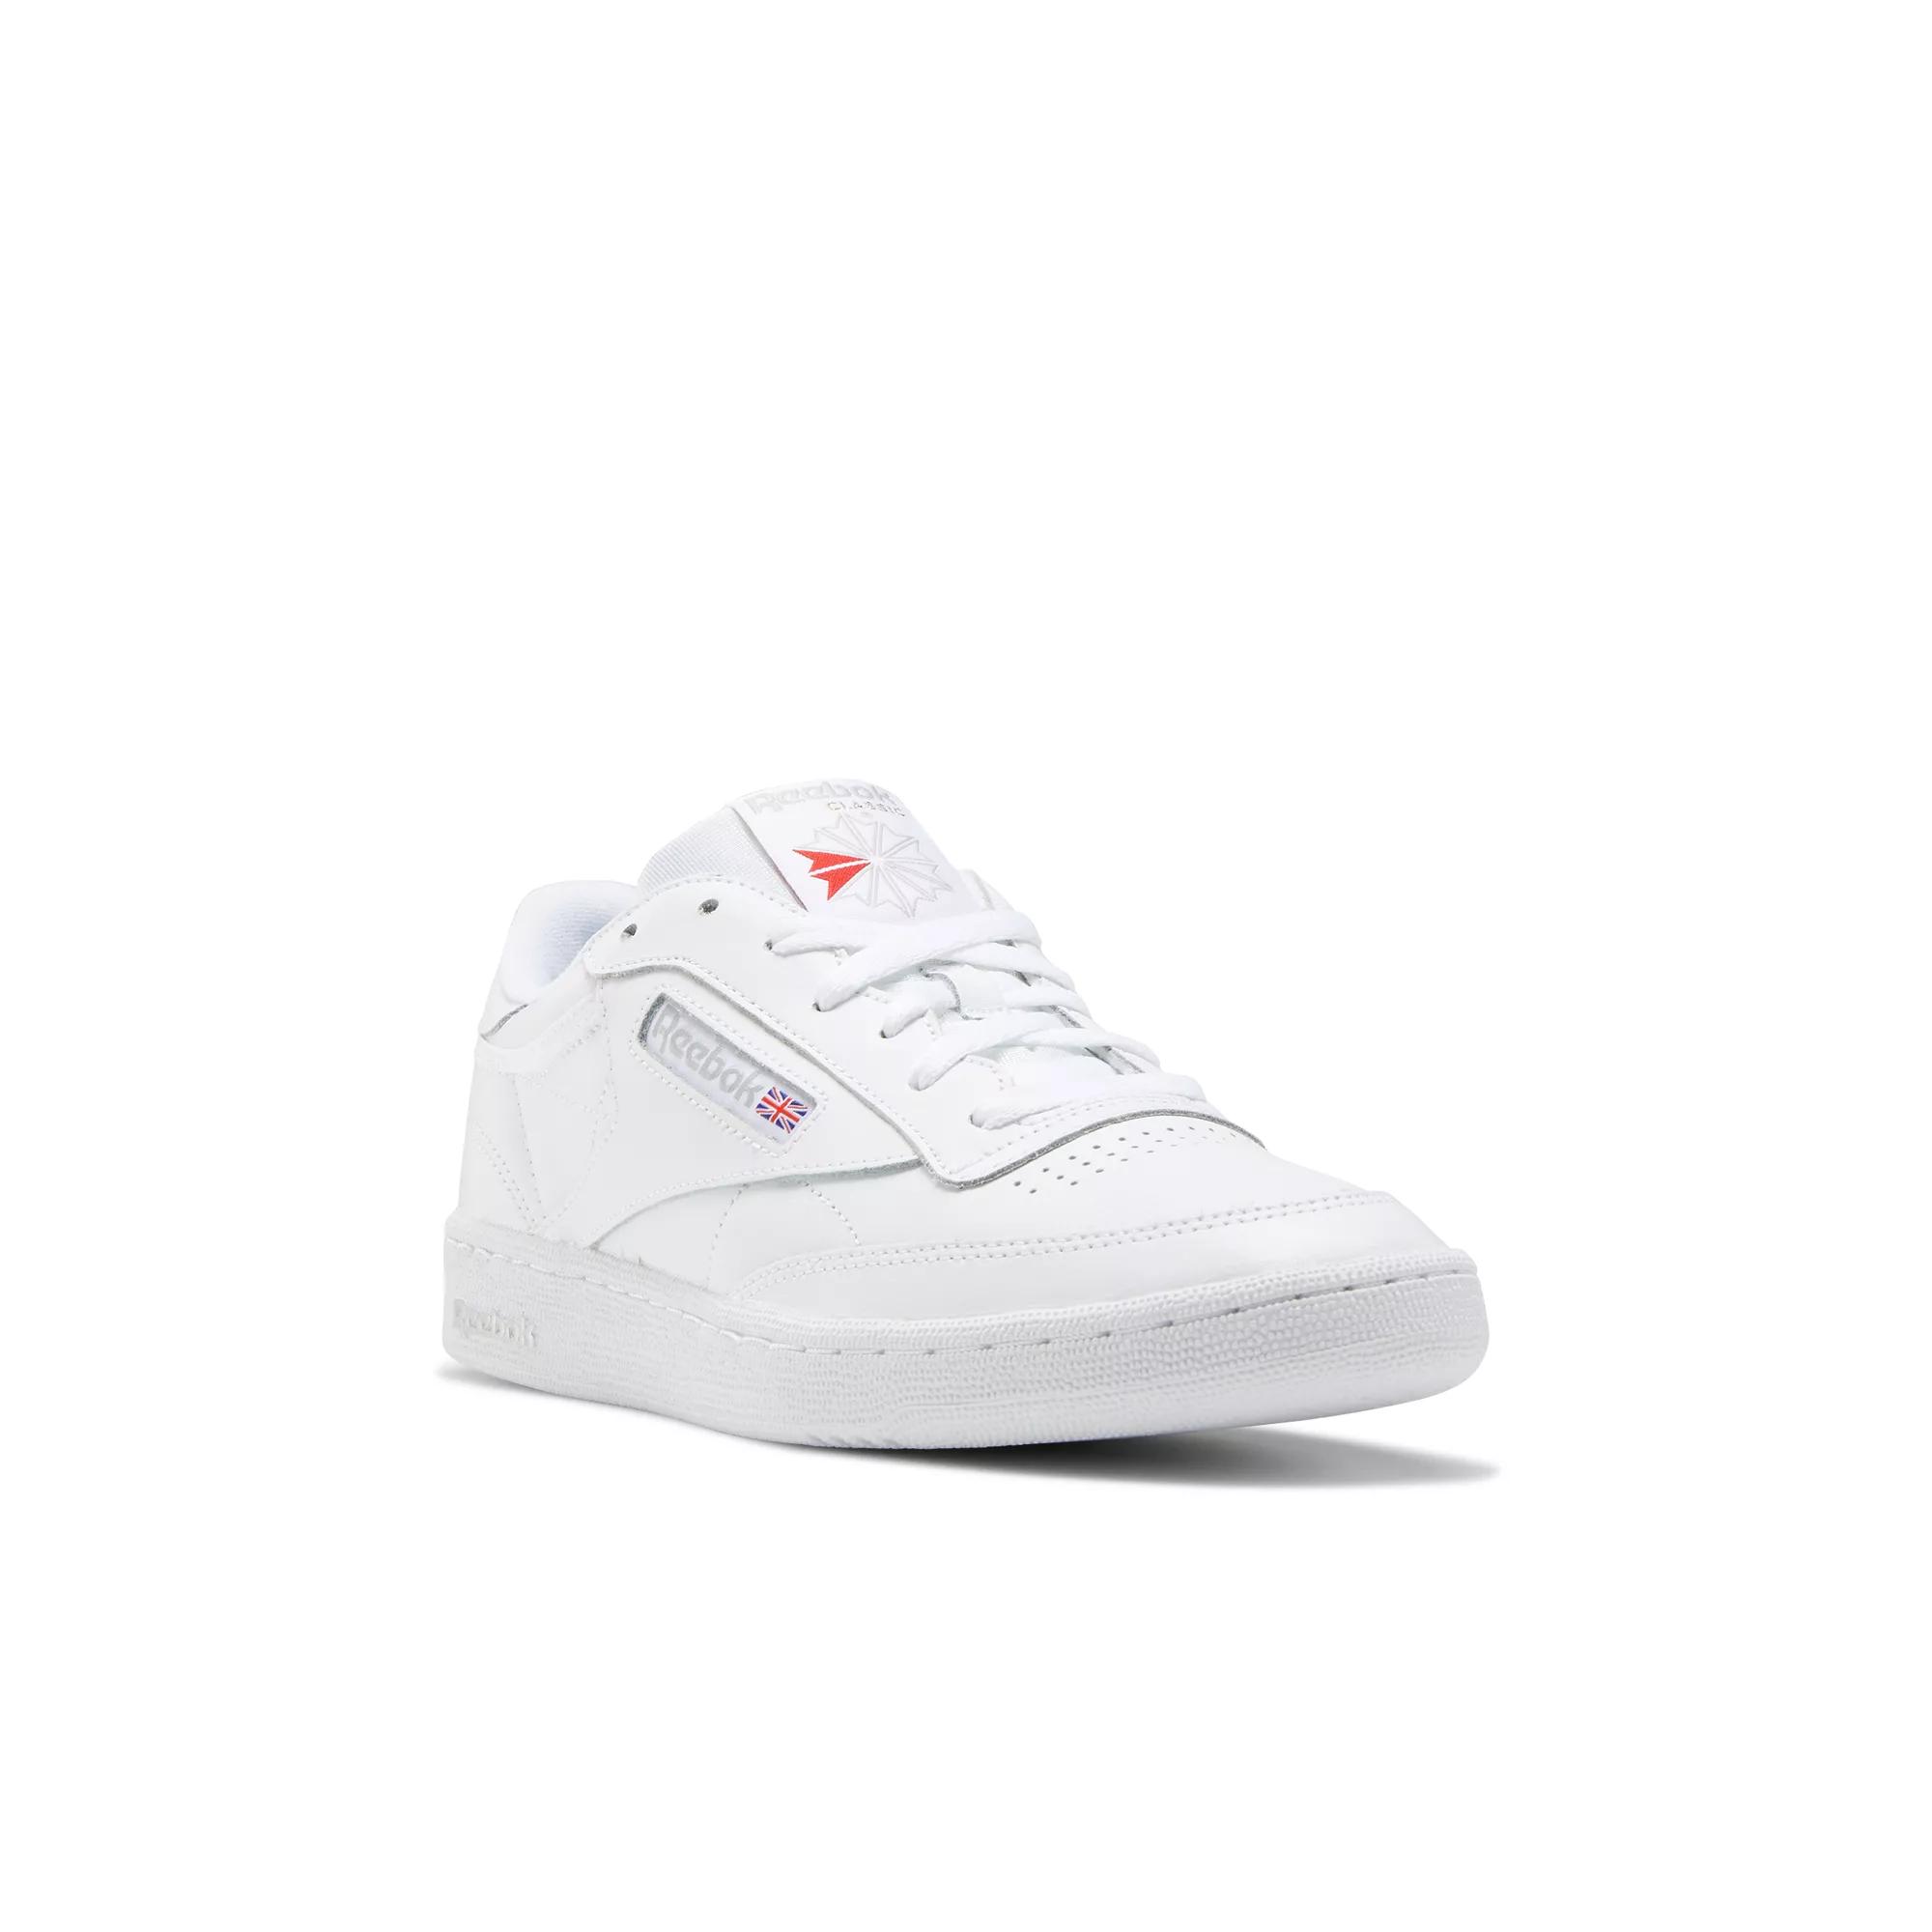 Club C 85 Shoes - Sheer Reebok Grey | White 